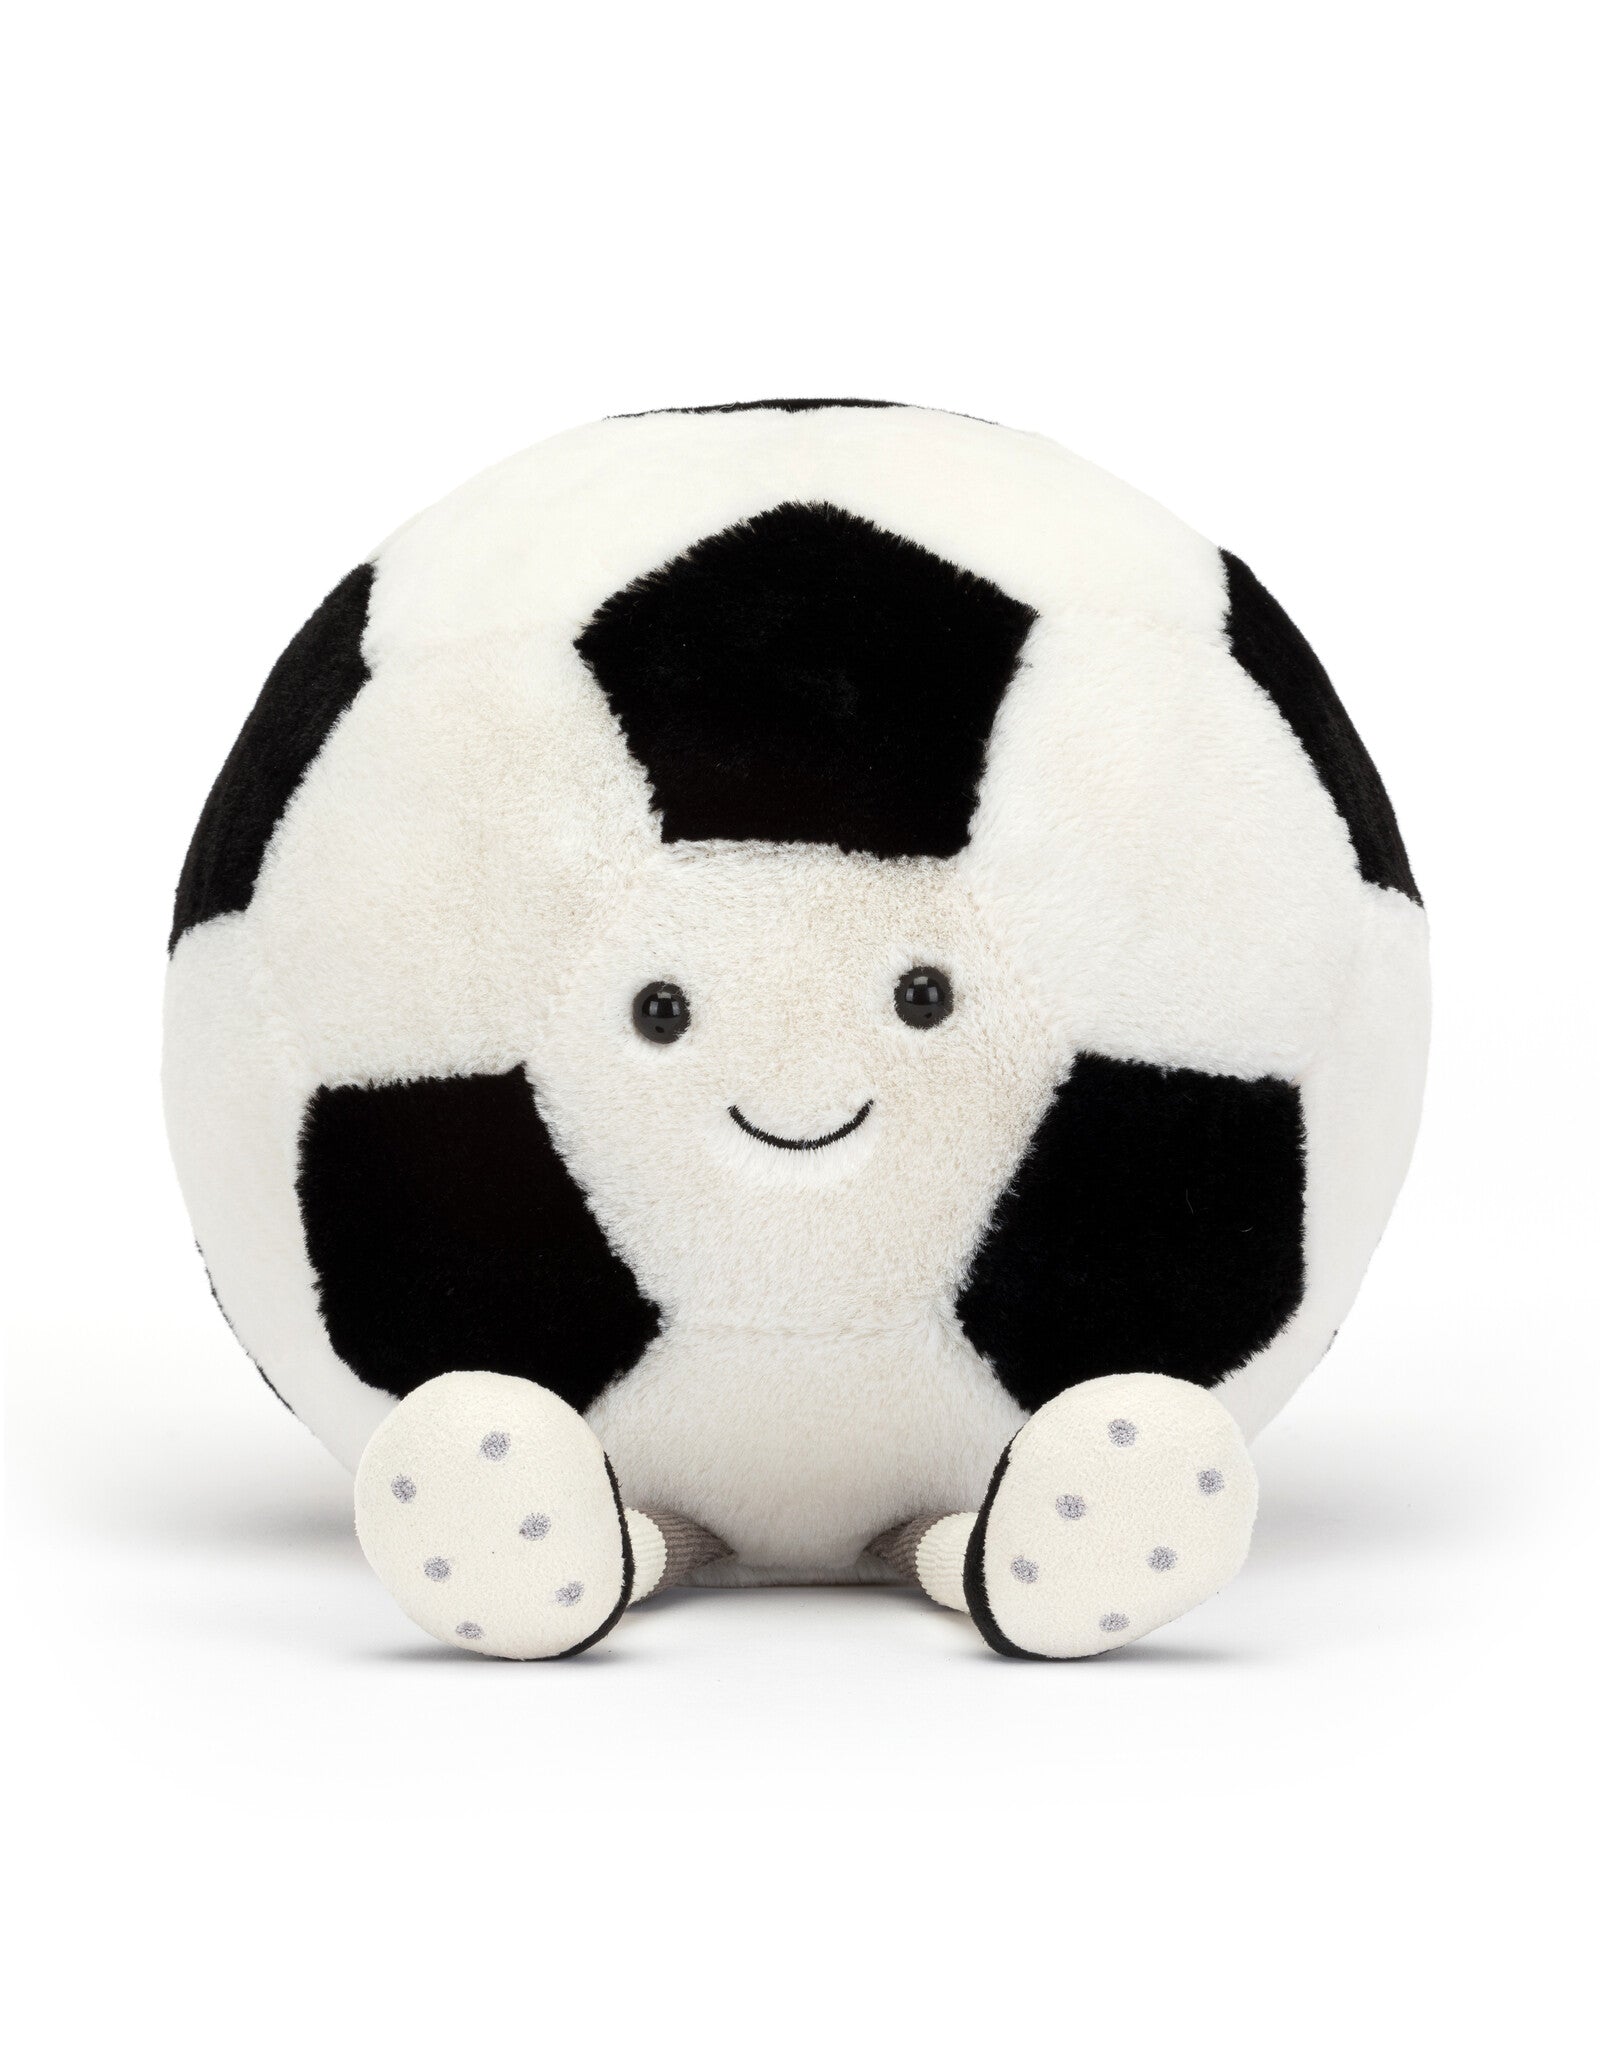 Amuseable Sports Soccer Ball - Oscar & Libby's